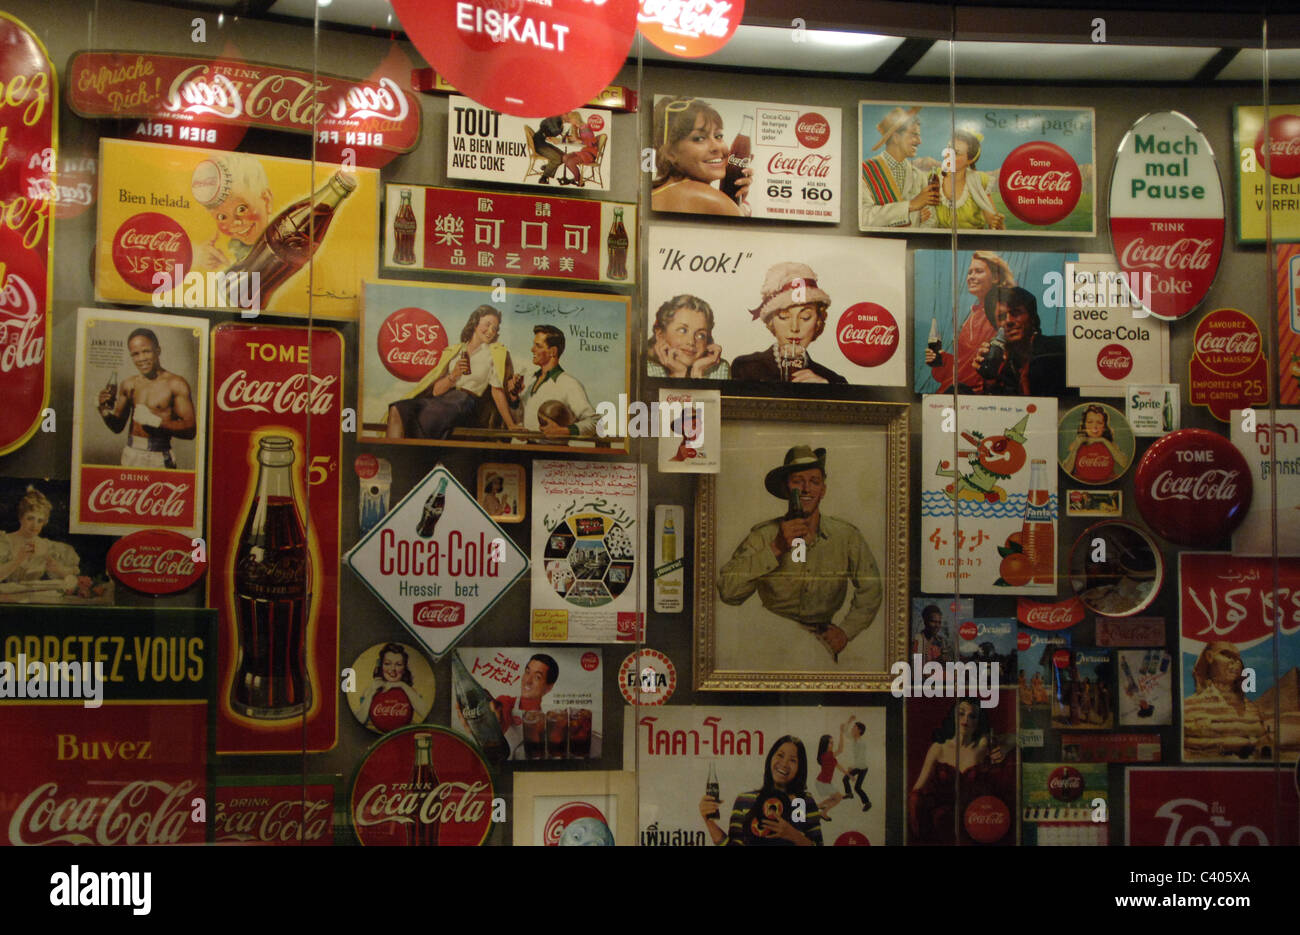 Mondo della Coca-Cola. Mostra permanente che presenta la storia della azienda Coca-Cola. Vecchia pubblicità per il coke. Atlanta. Stati Uniti d'America. Foto Stock